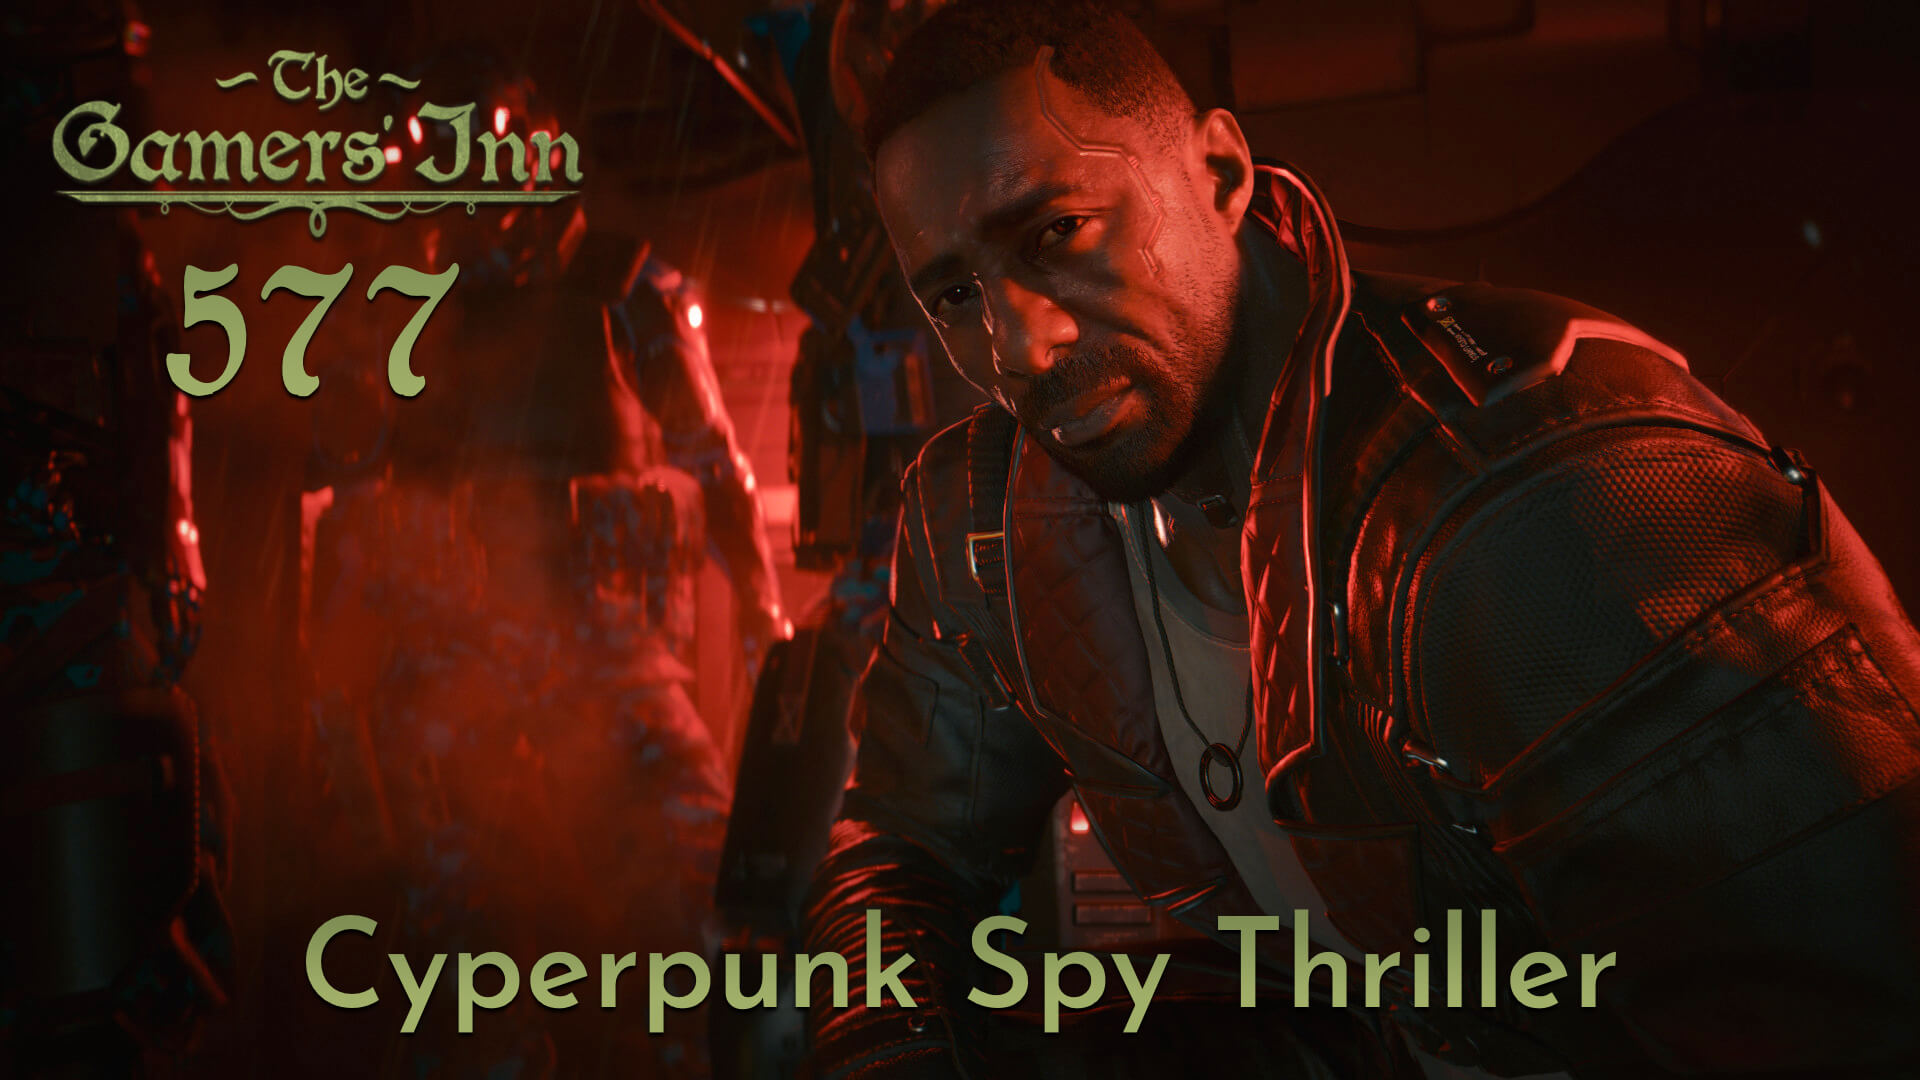 TGI 577 – Cyperpunk Spy Thriller